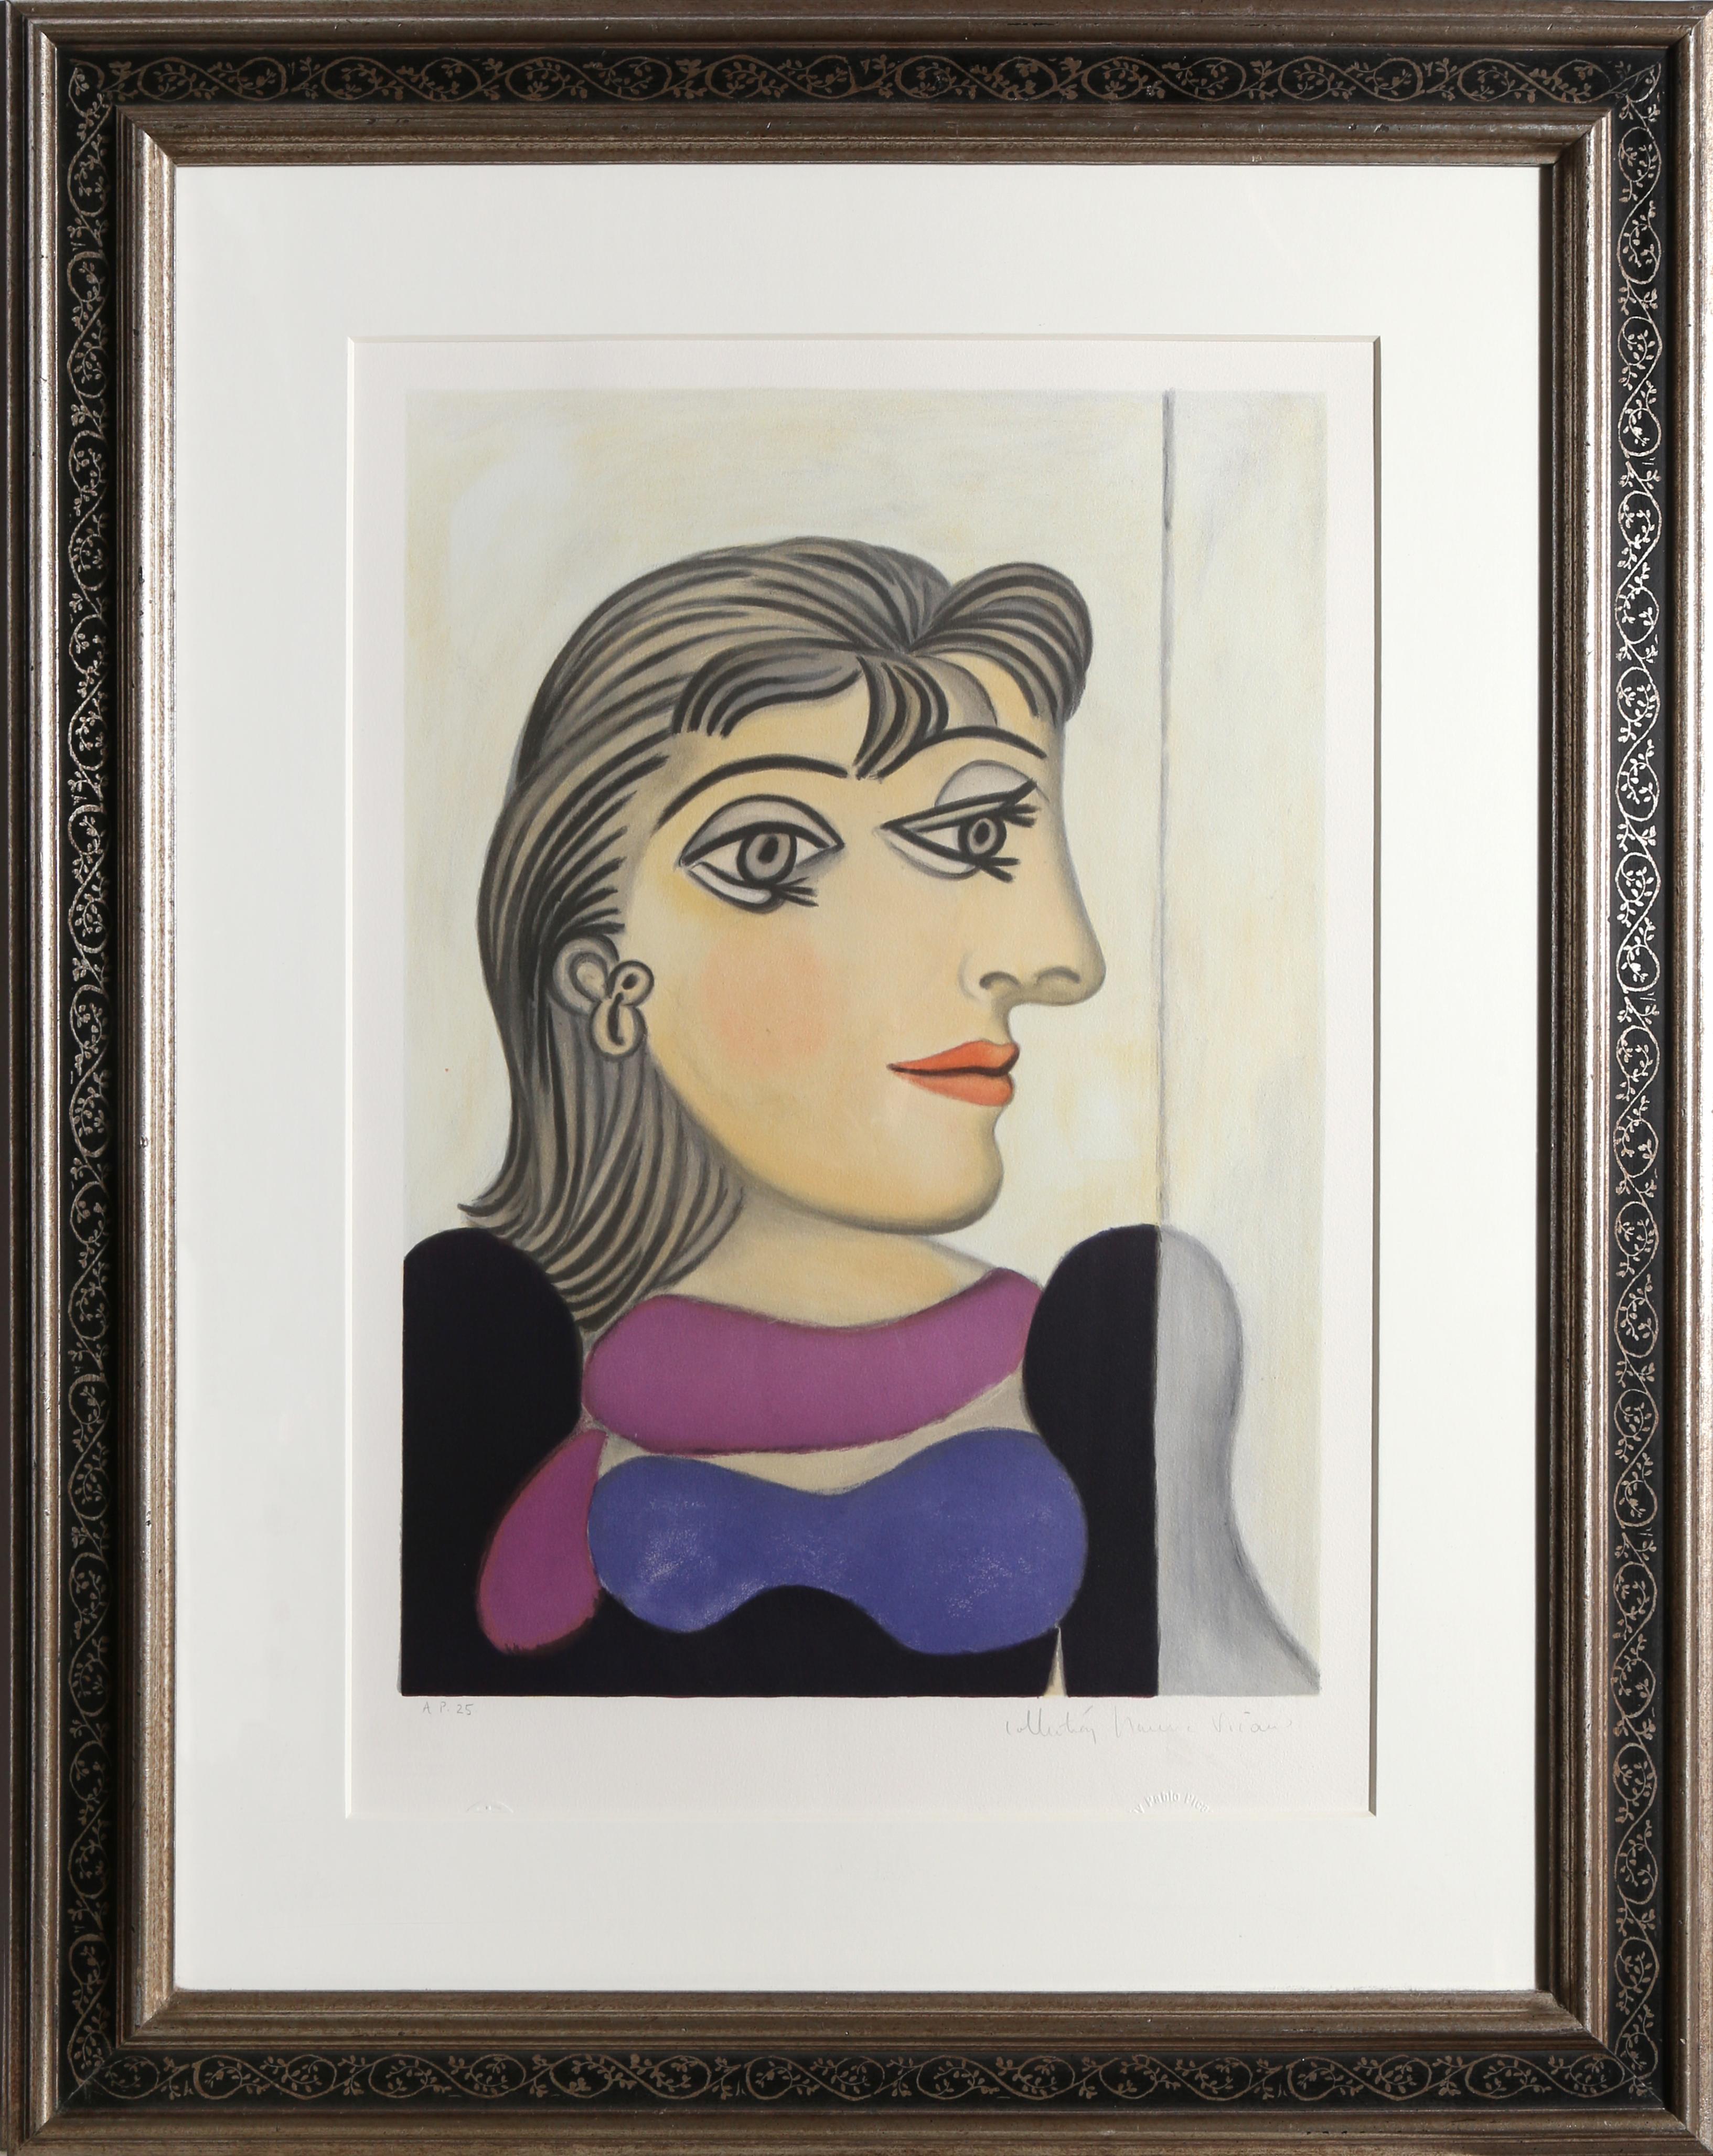 Une lithographie provenant de la Collection SALE de Marina Picasso d'après le tableau de Pablo Picasso "Buste de Femme Au Foulard Mauve".  La peinture originale a été achevée en 1937. Dans les années 1970, après la mort de Picasso, Marina Picasso,